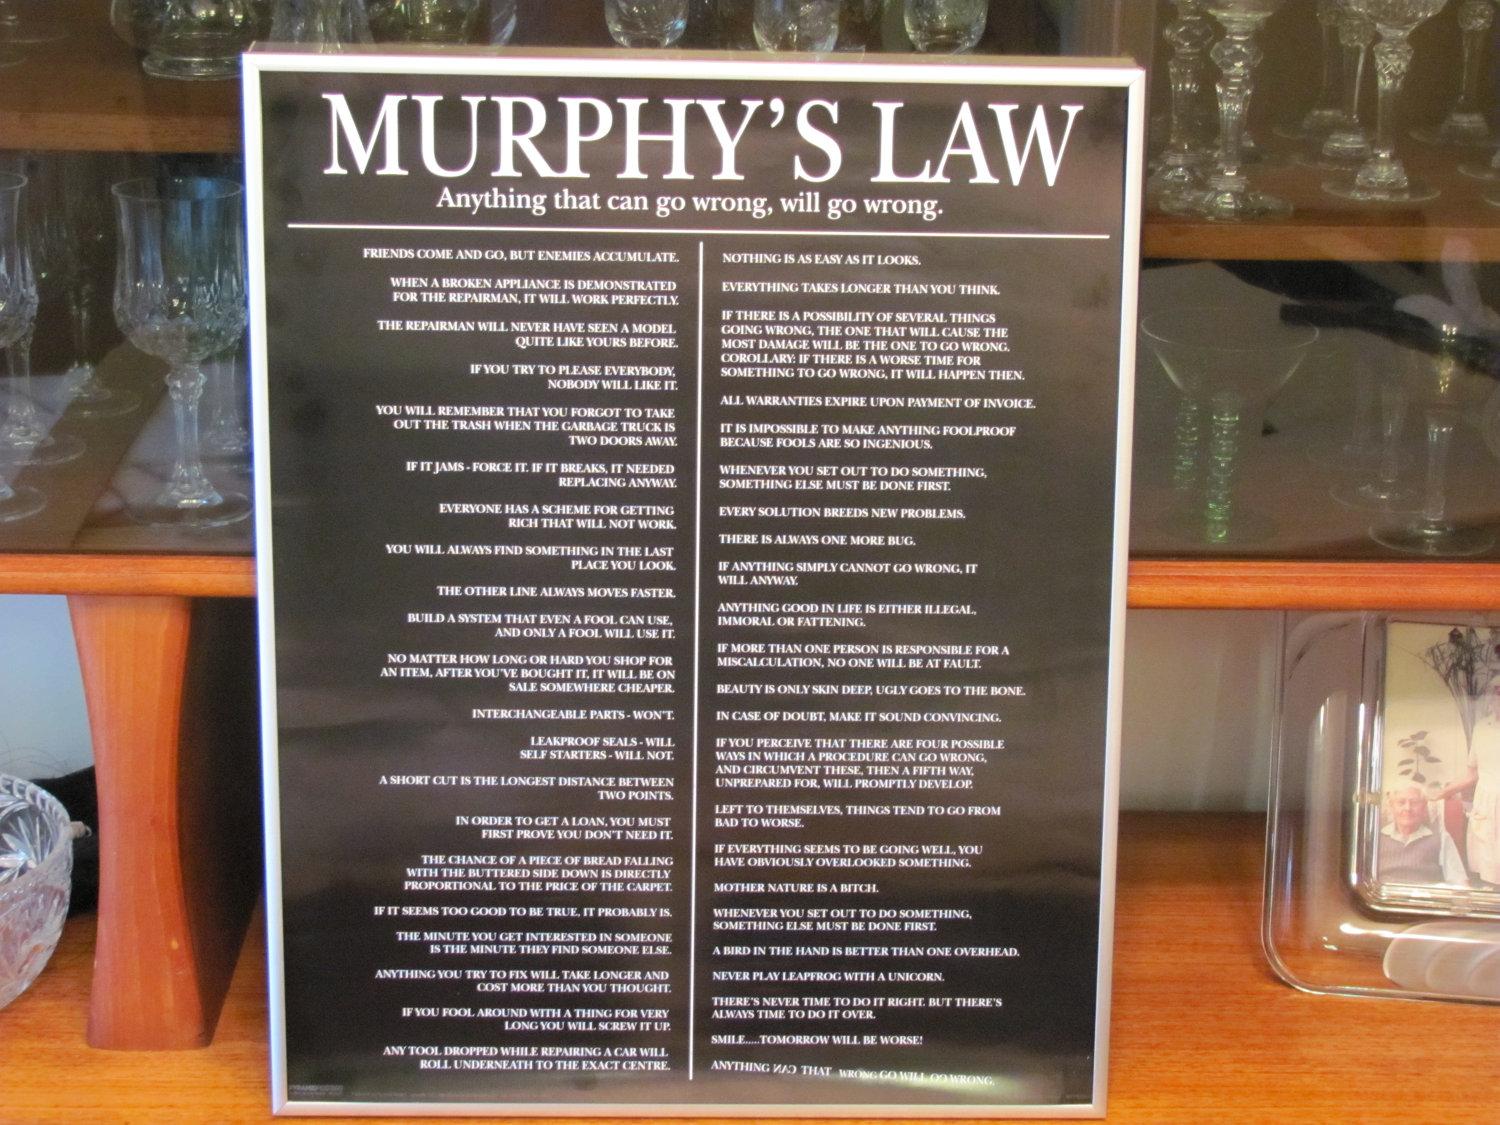 قانون مورفي - البداية